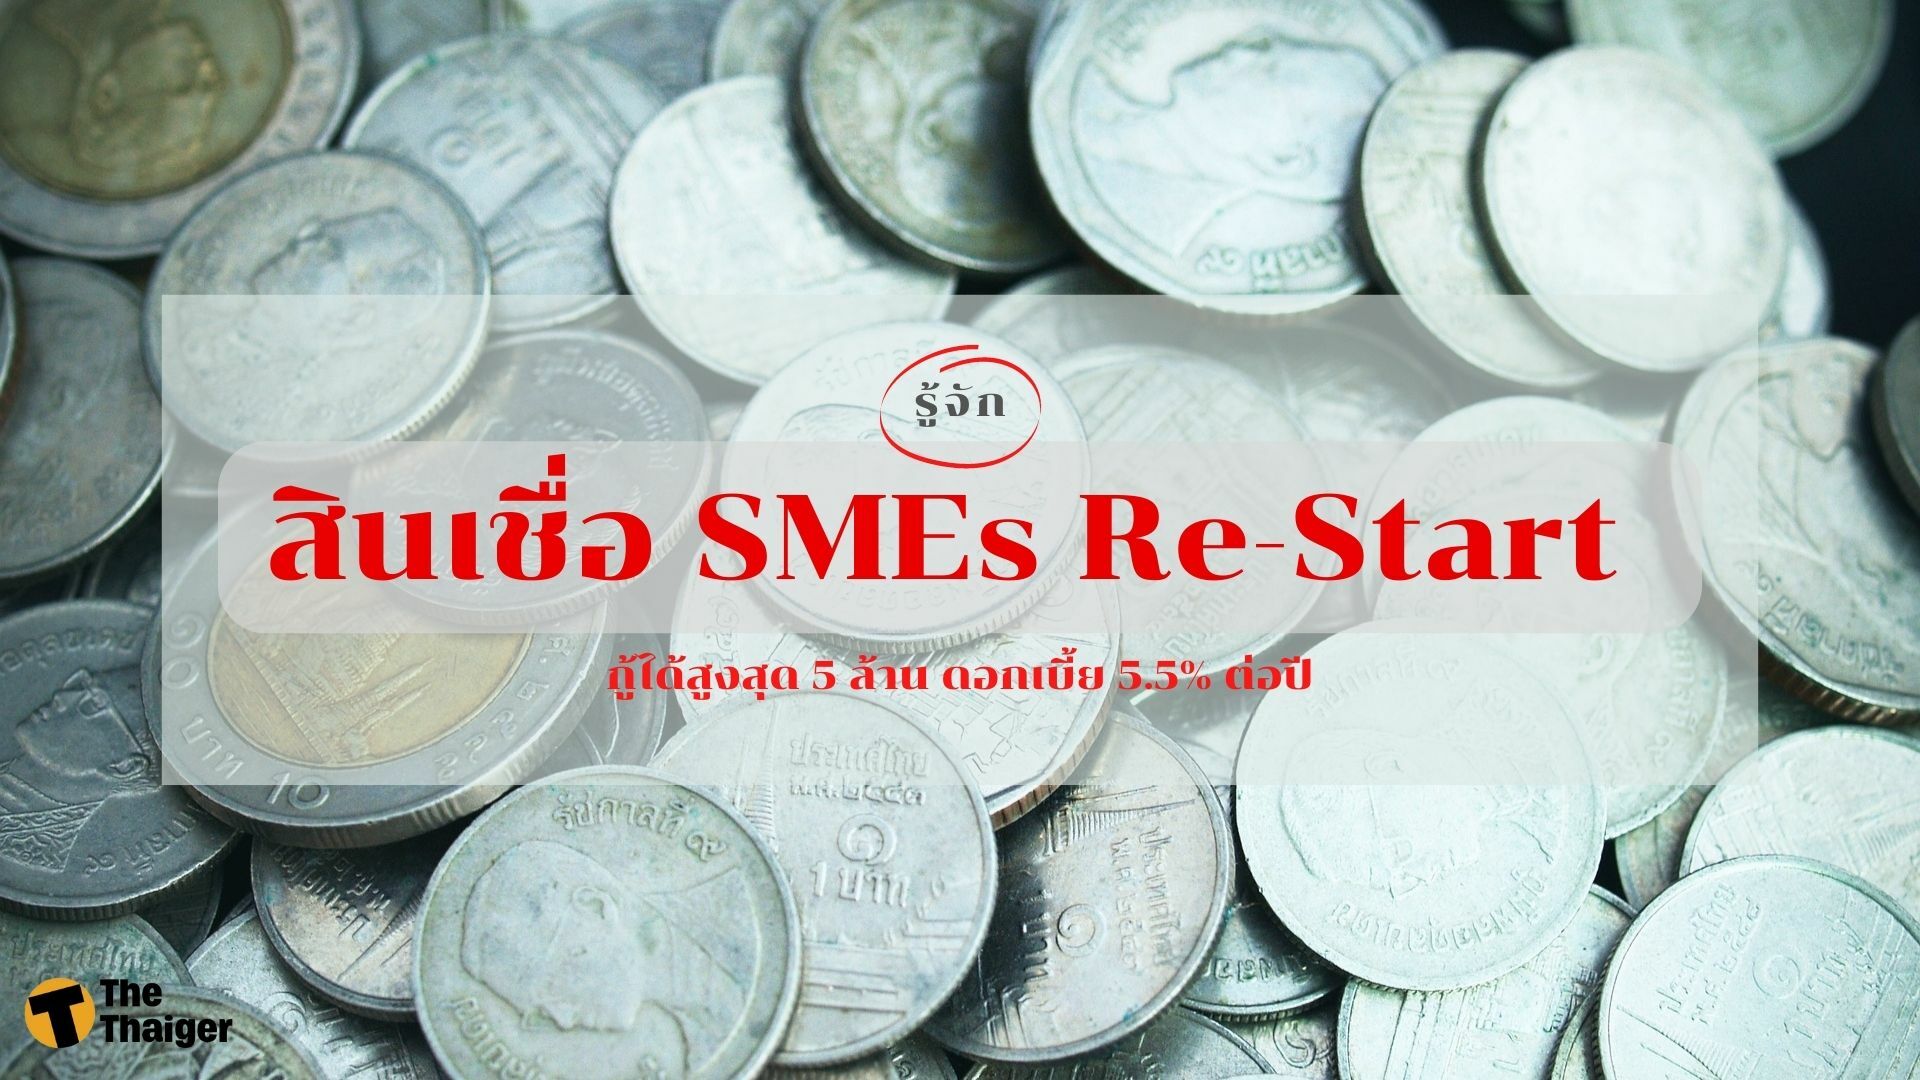 รู้จัก สินเชื่อ SMEs Re-Start กู้ได้สูงสุด 5 ล้าน ดอกเบี้ย 5.5% ต่อปี